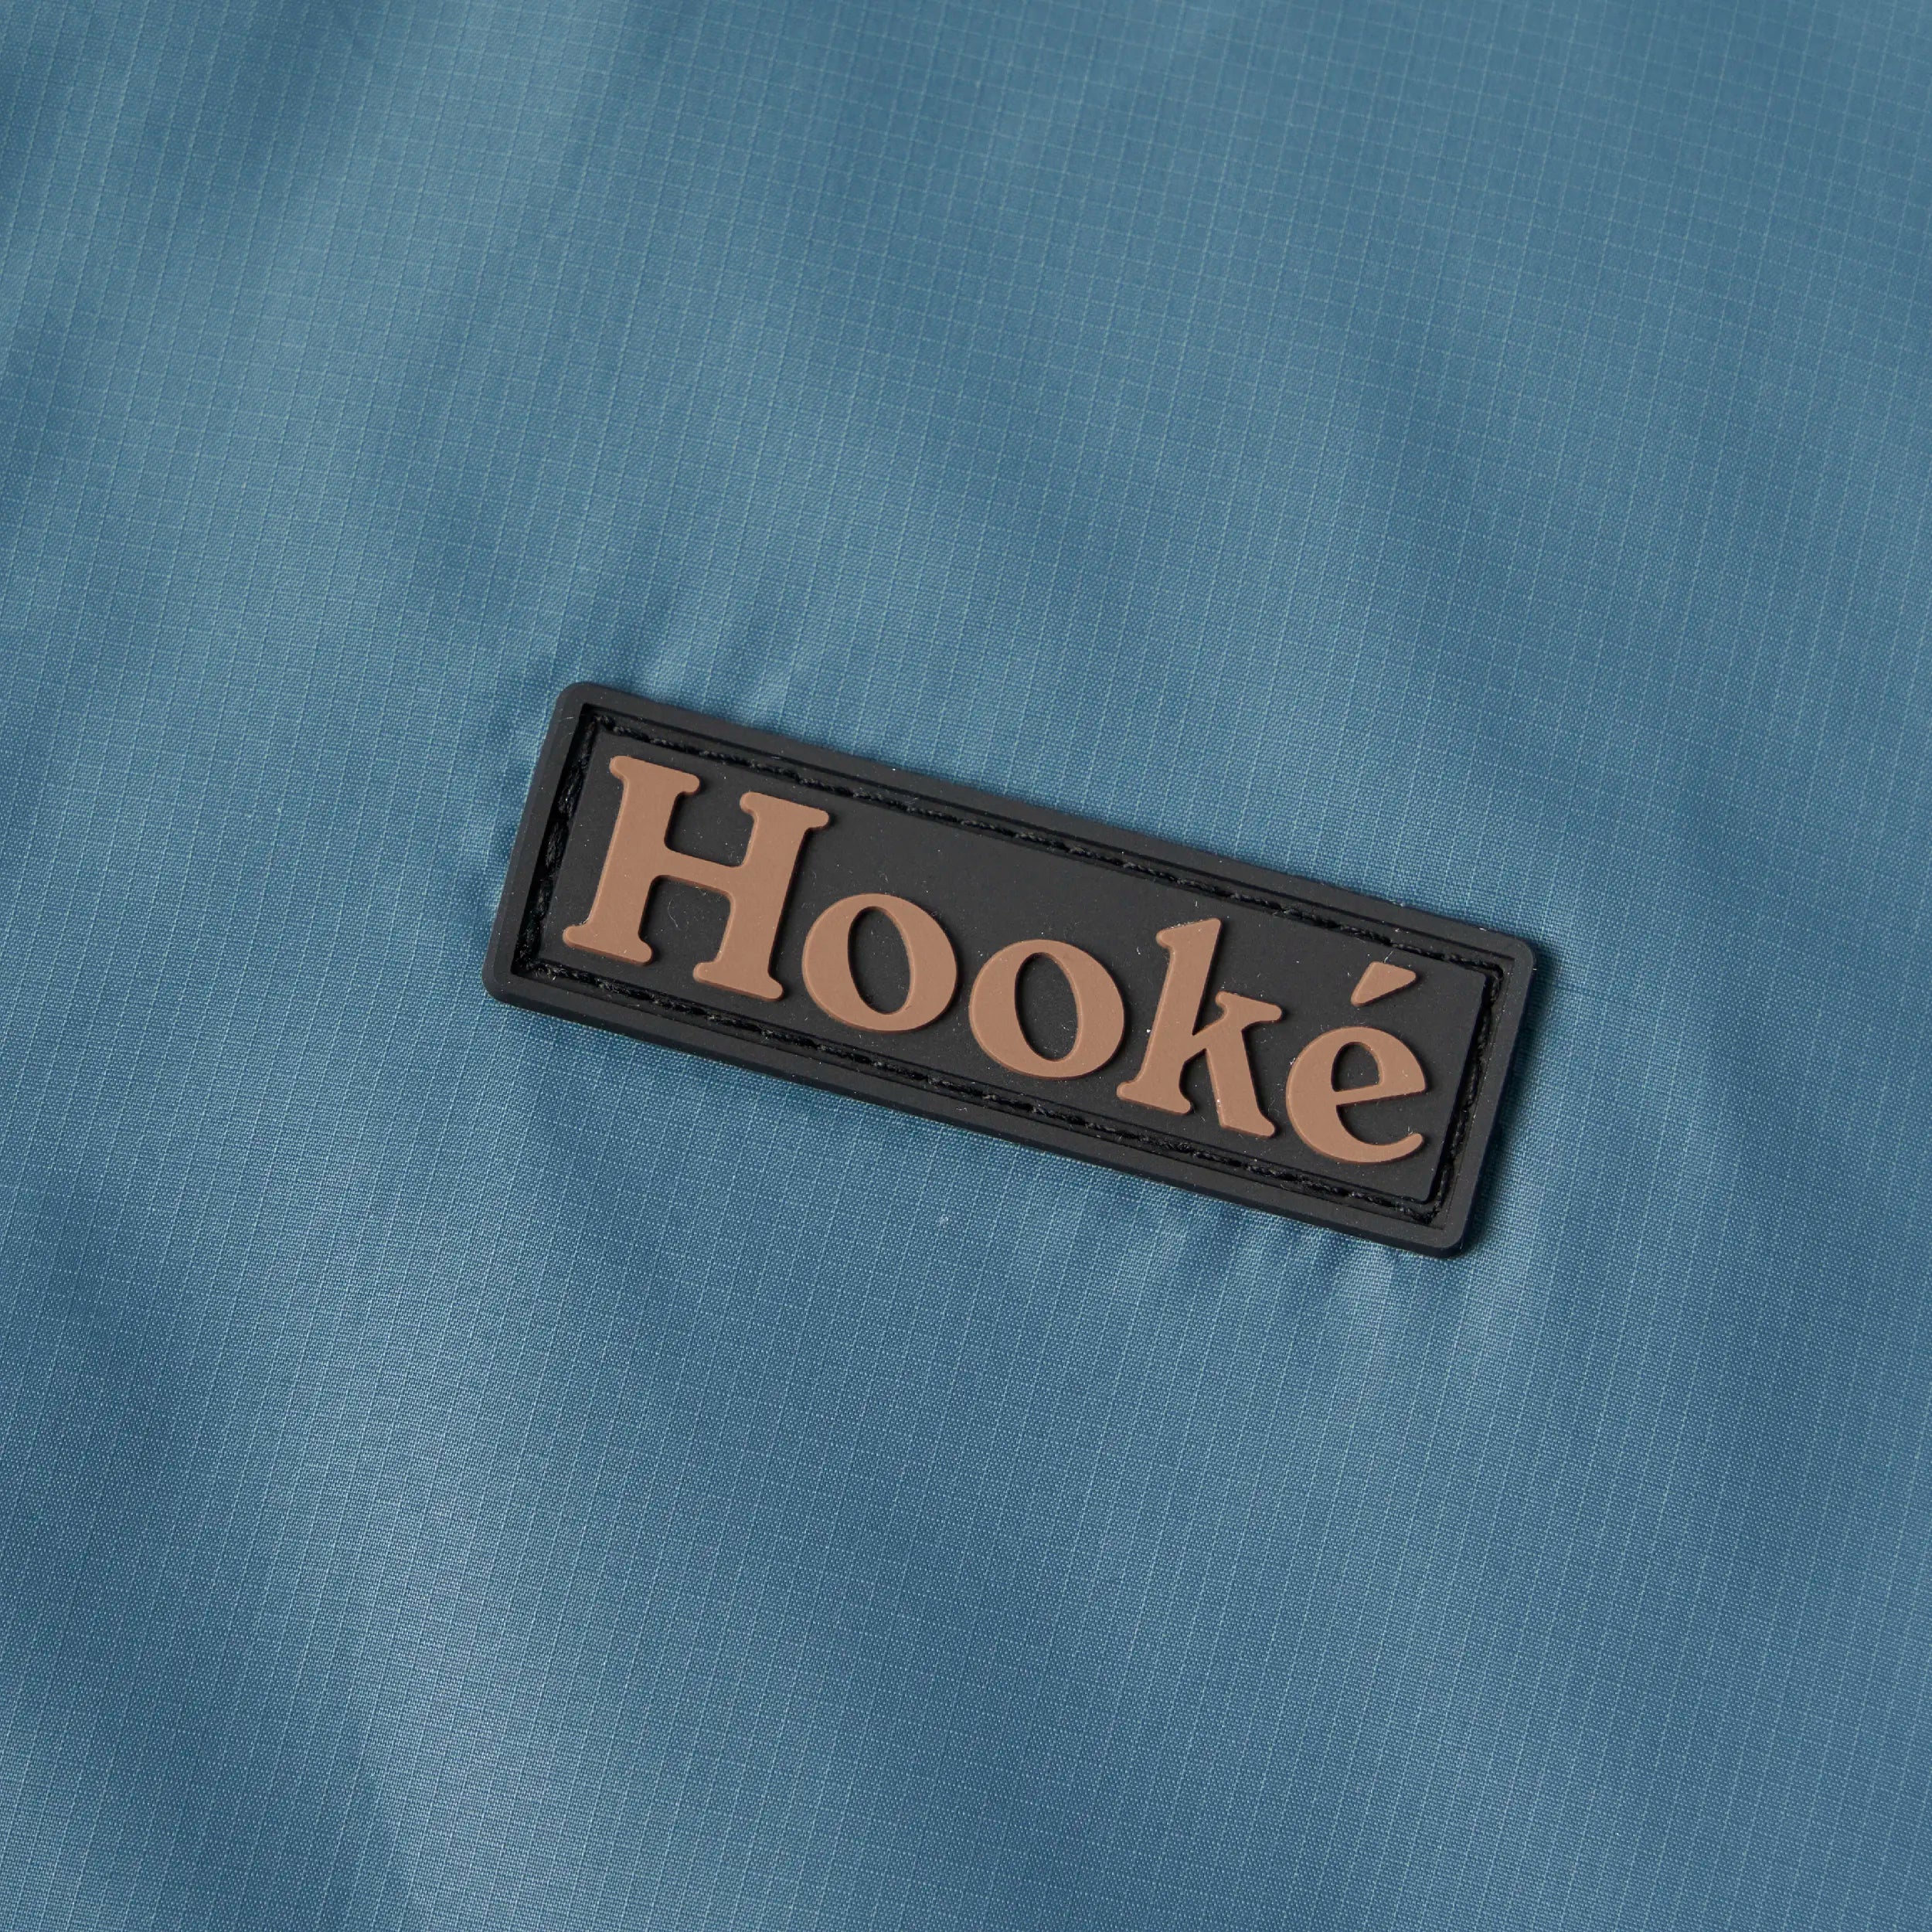 W's Dome Windbreaker Jacket - Hooké